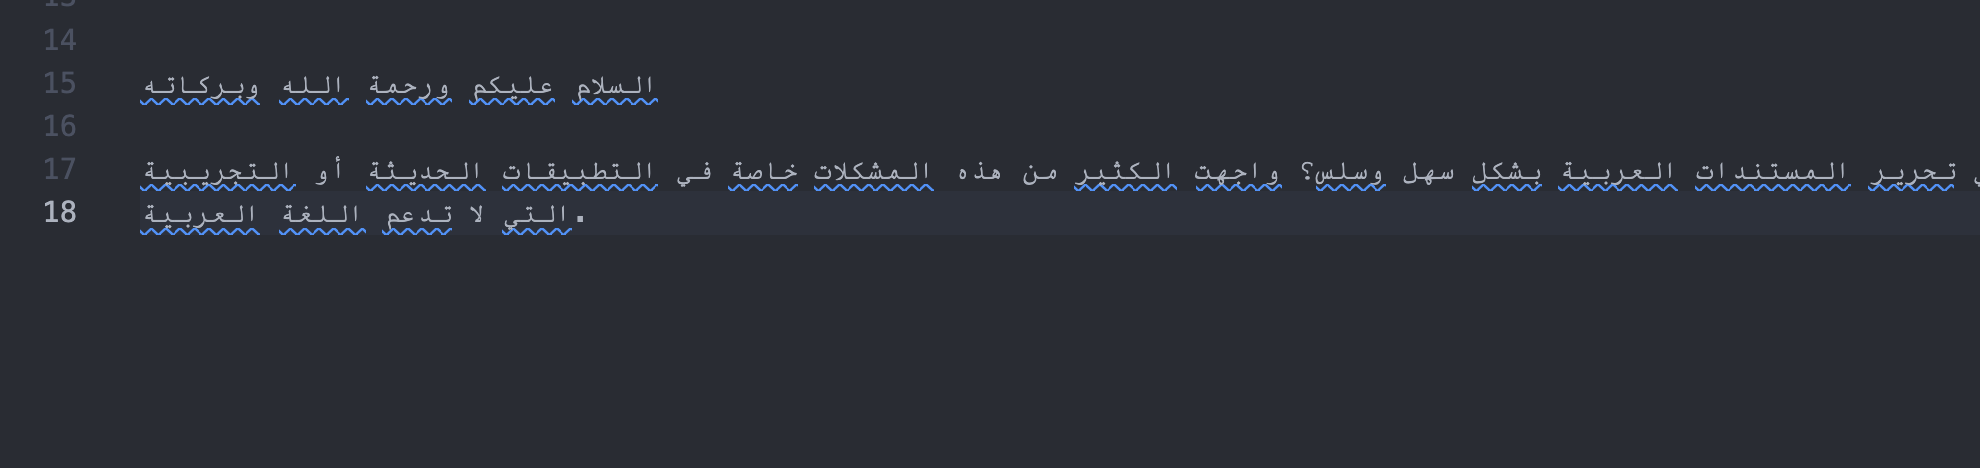 مثال على لغة عربية مكتوبة من اليسار للميني